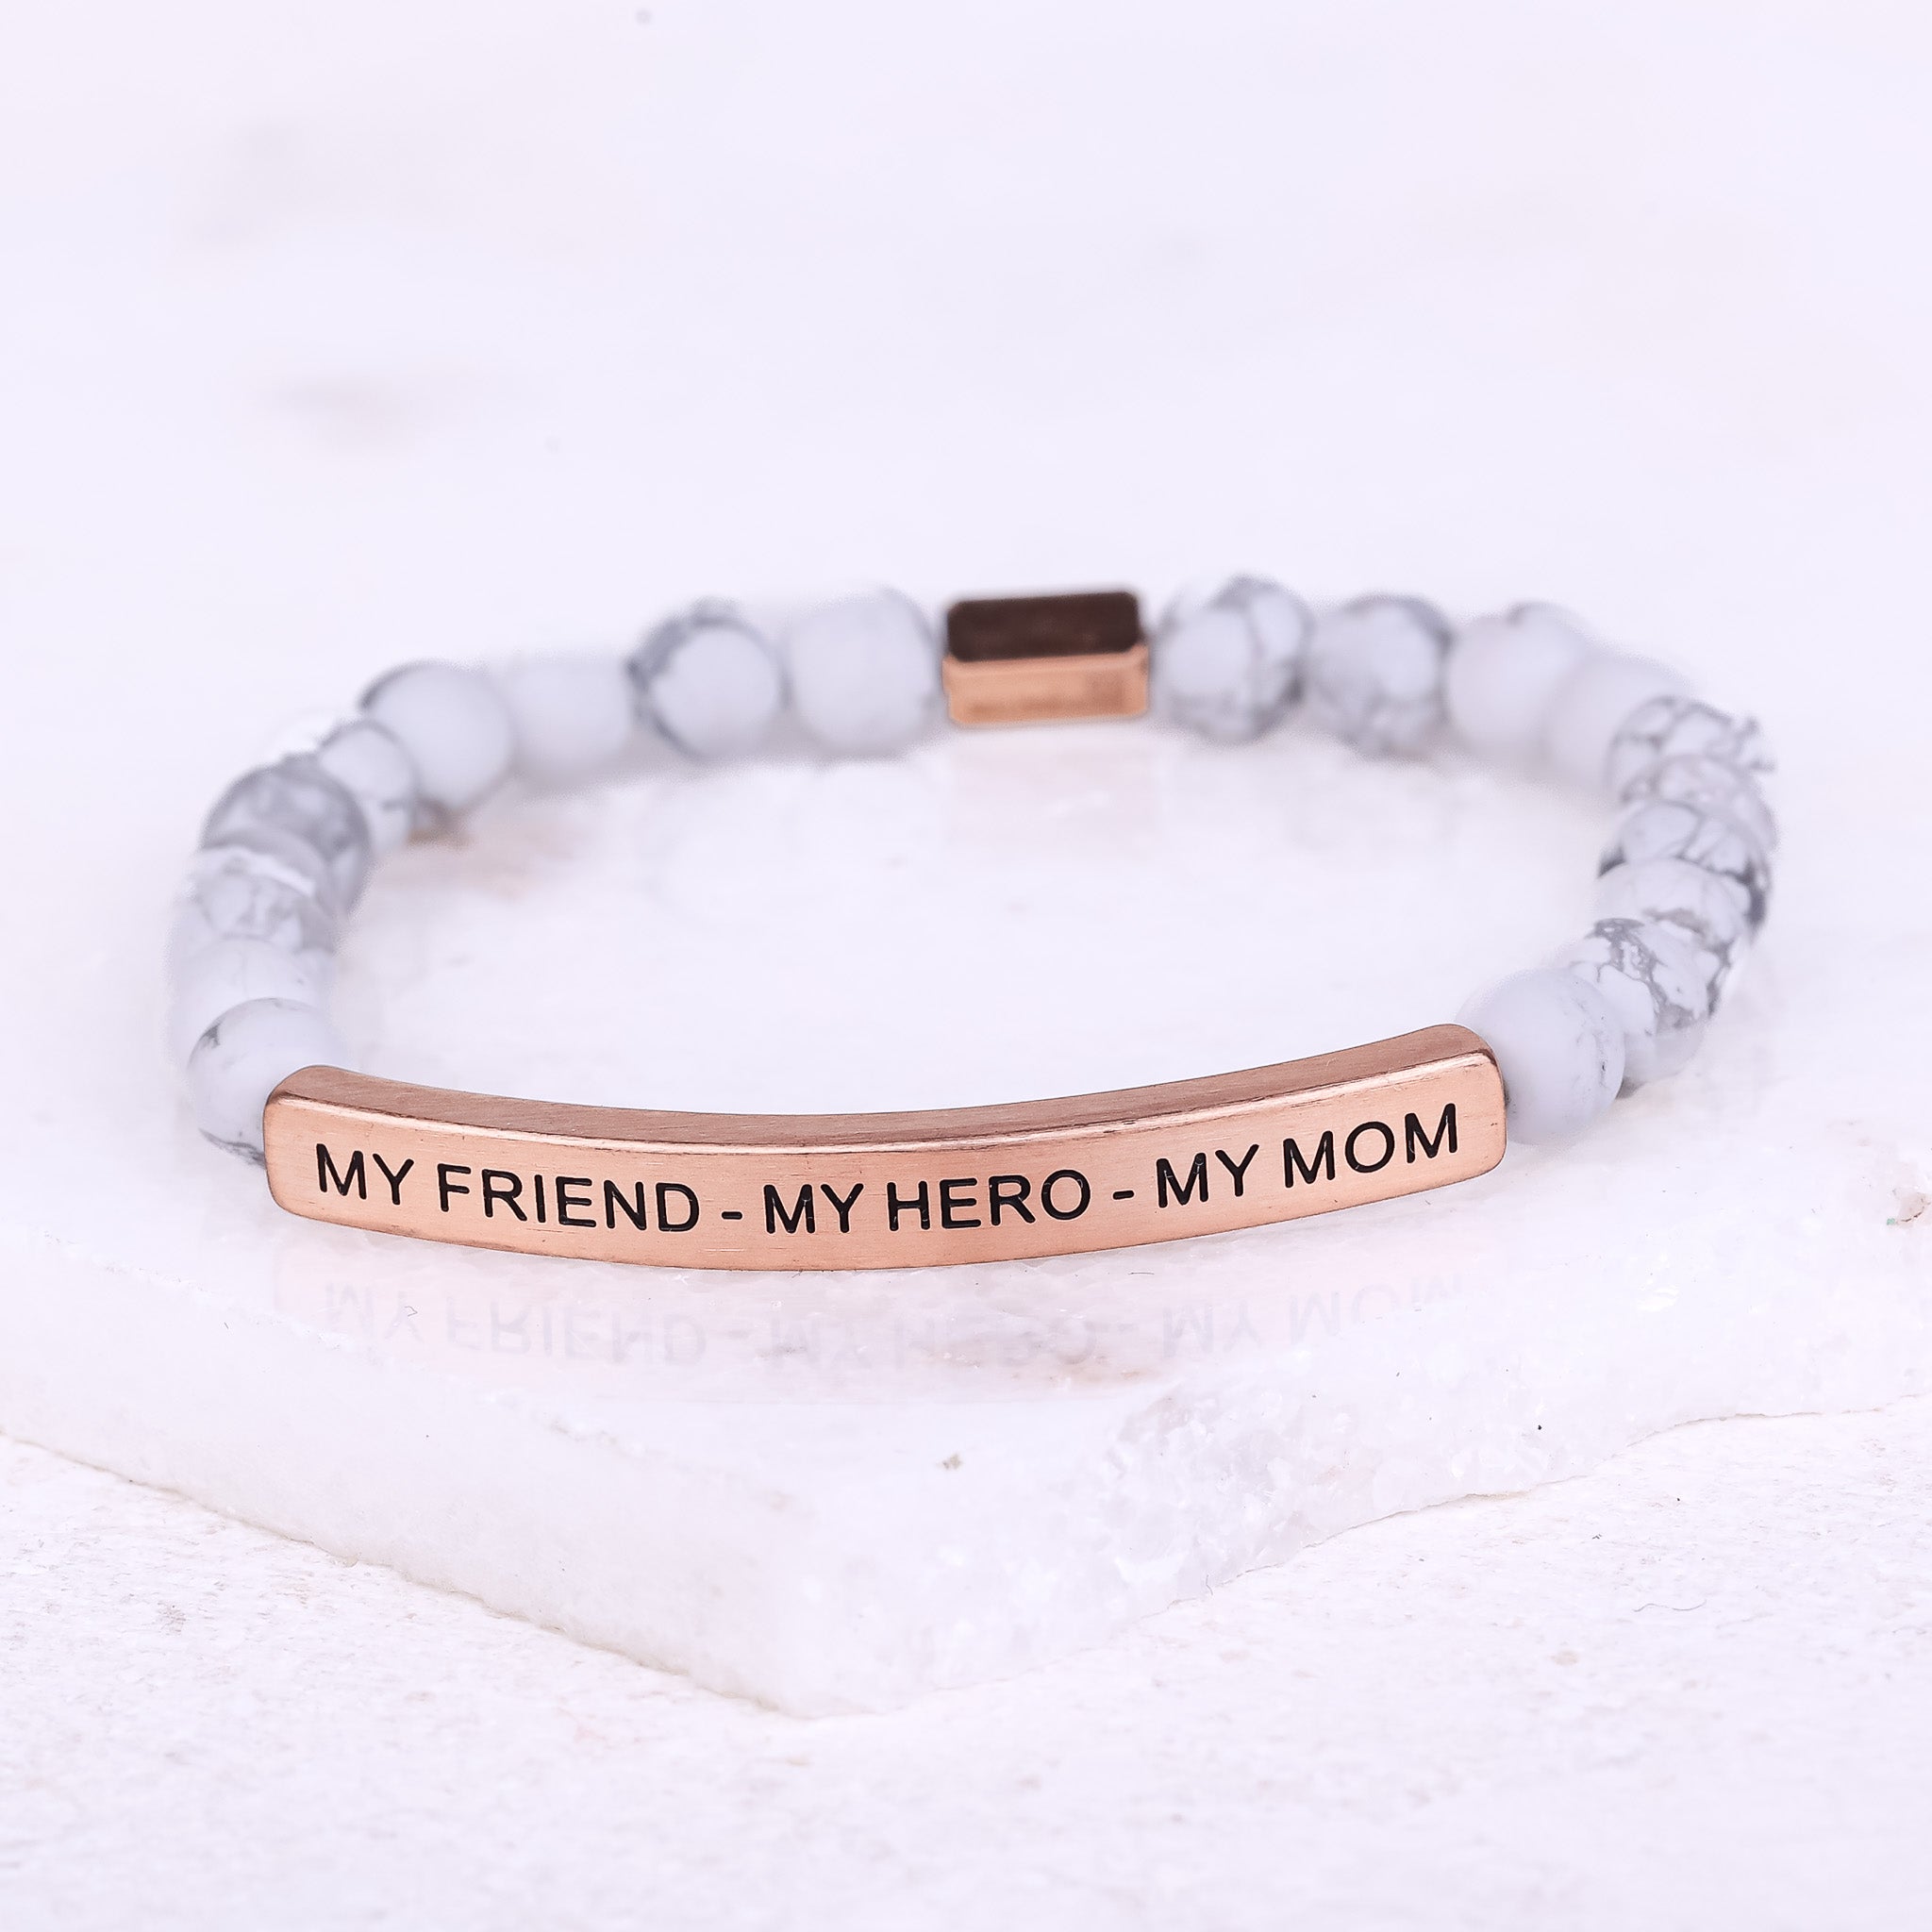 MY FRIEND - MY HERO - MY MOM